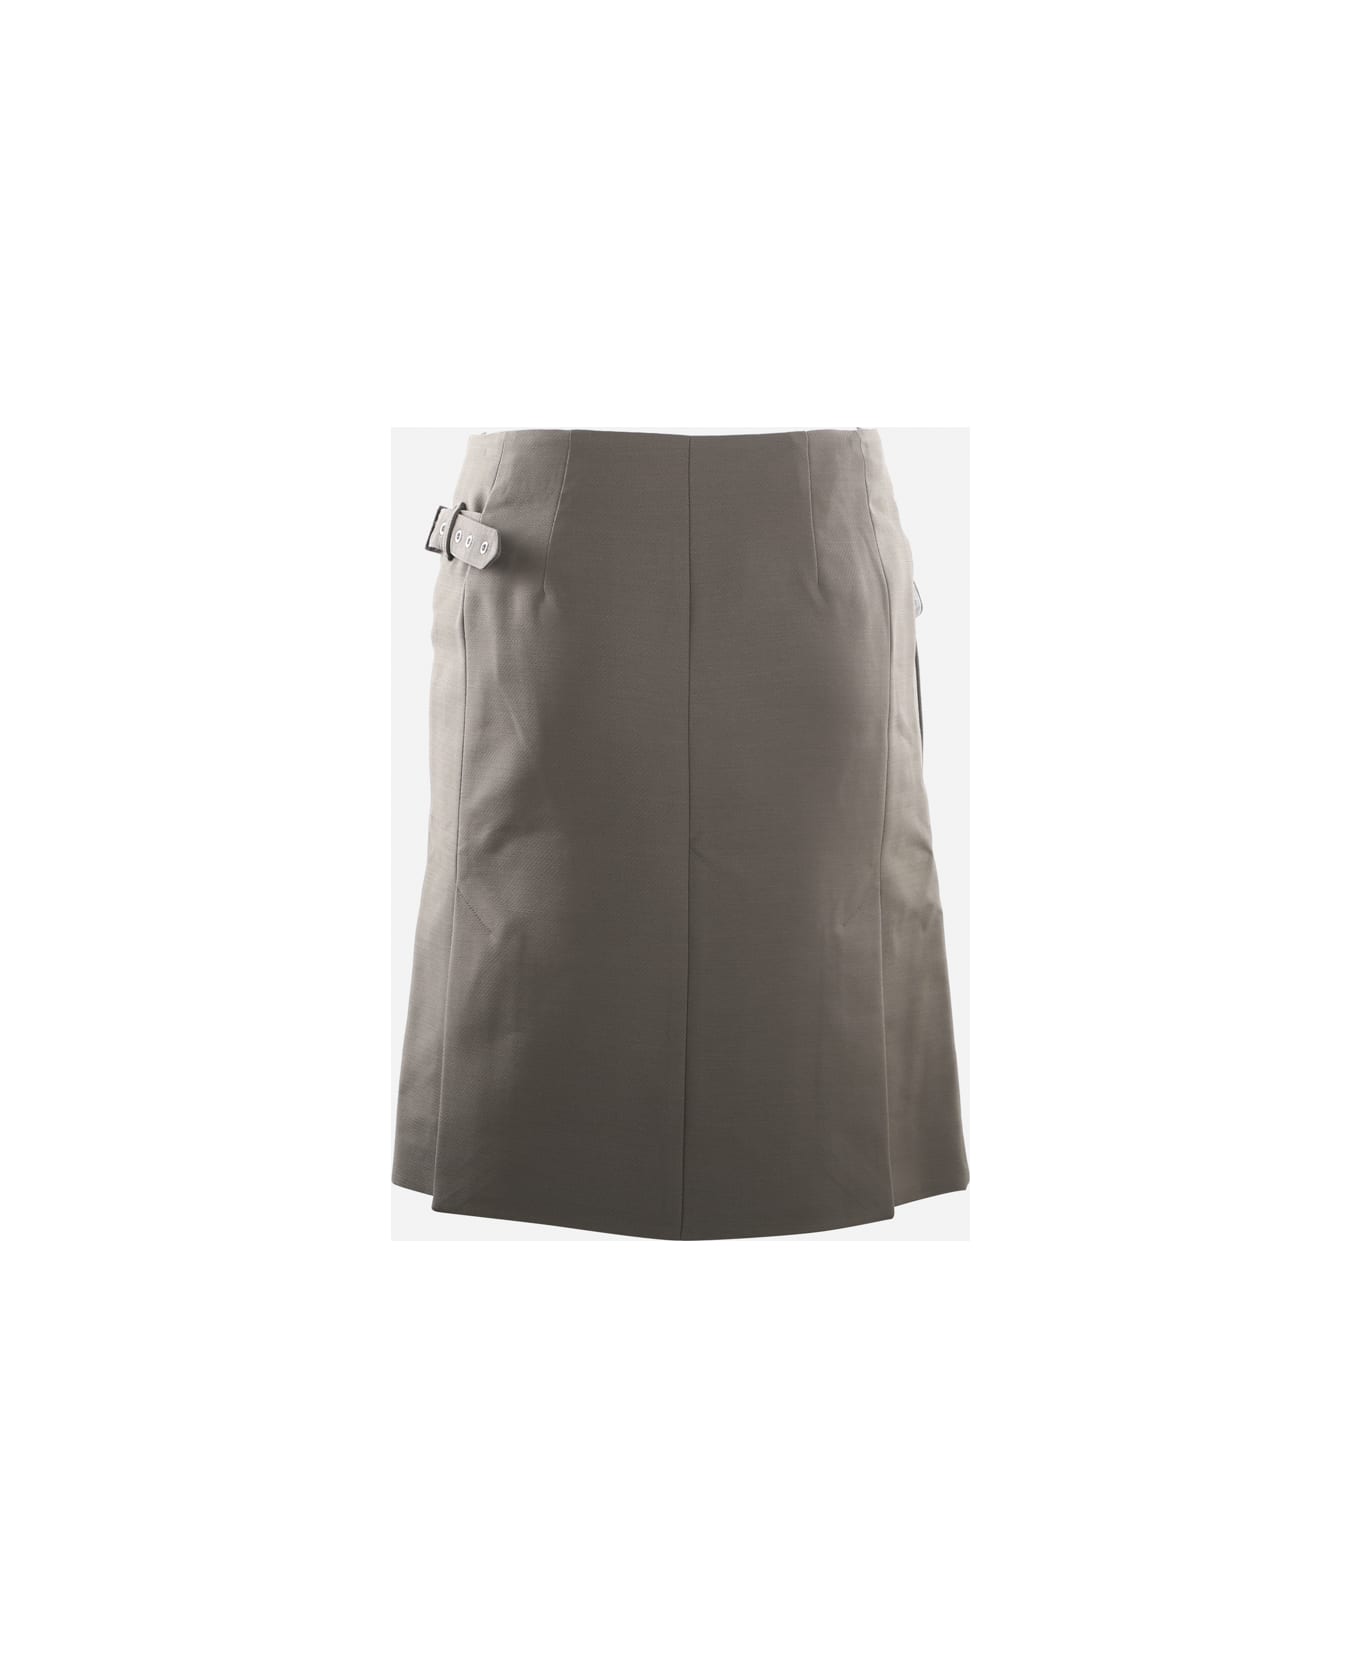 Peter Do Asymmetrical Skirt In Virgin Wool - Olive